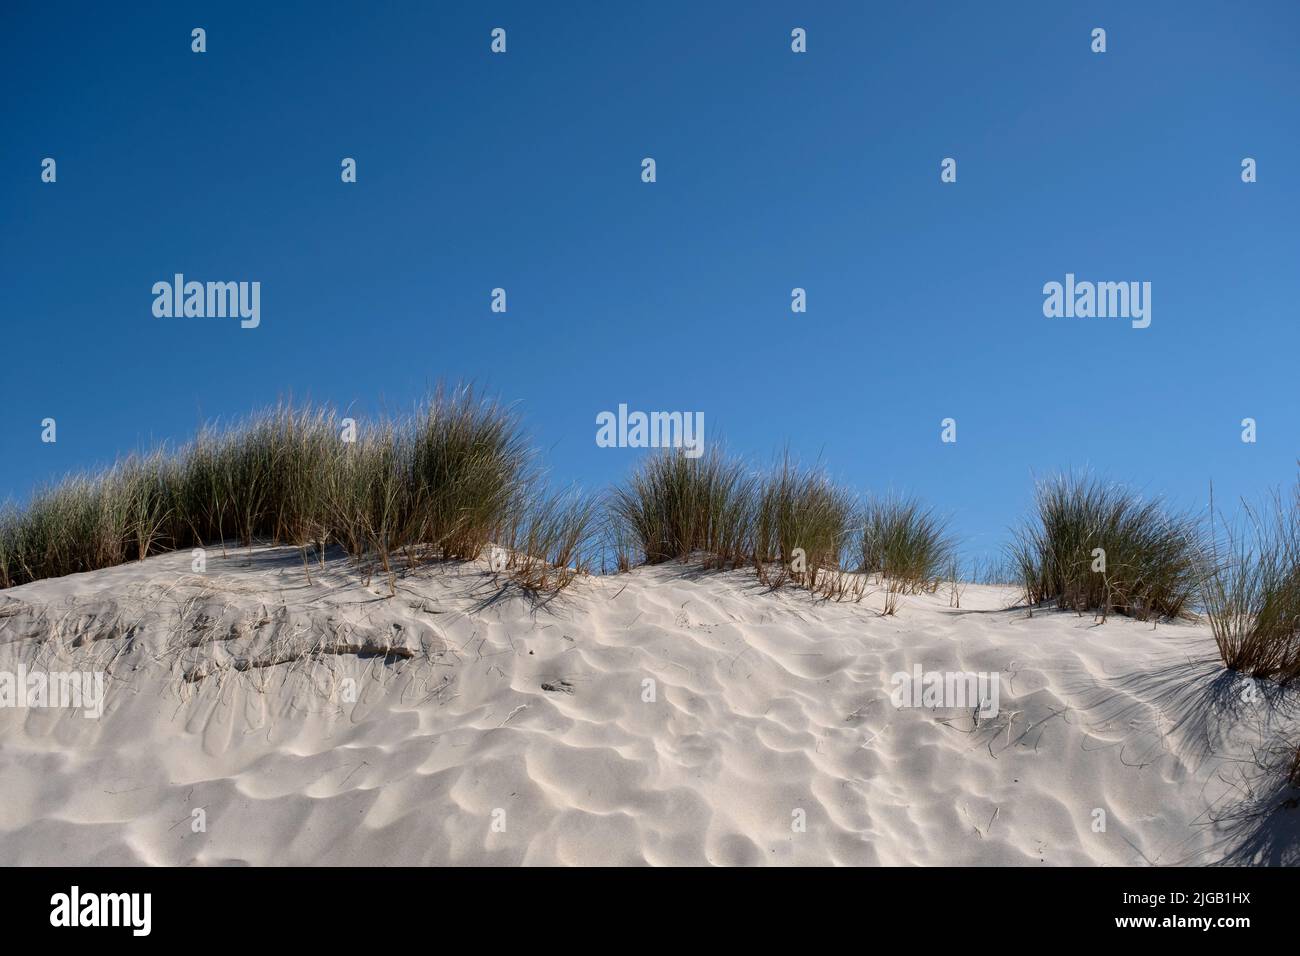 L'herbe de plage européenne (Ammophila arenaria) dans les dunes de sable blanc Banque D'Images